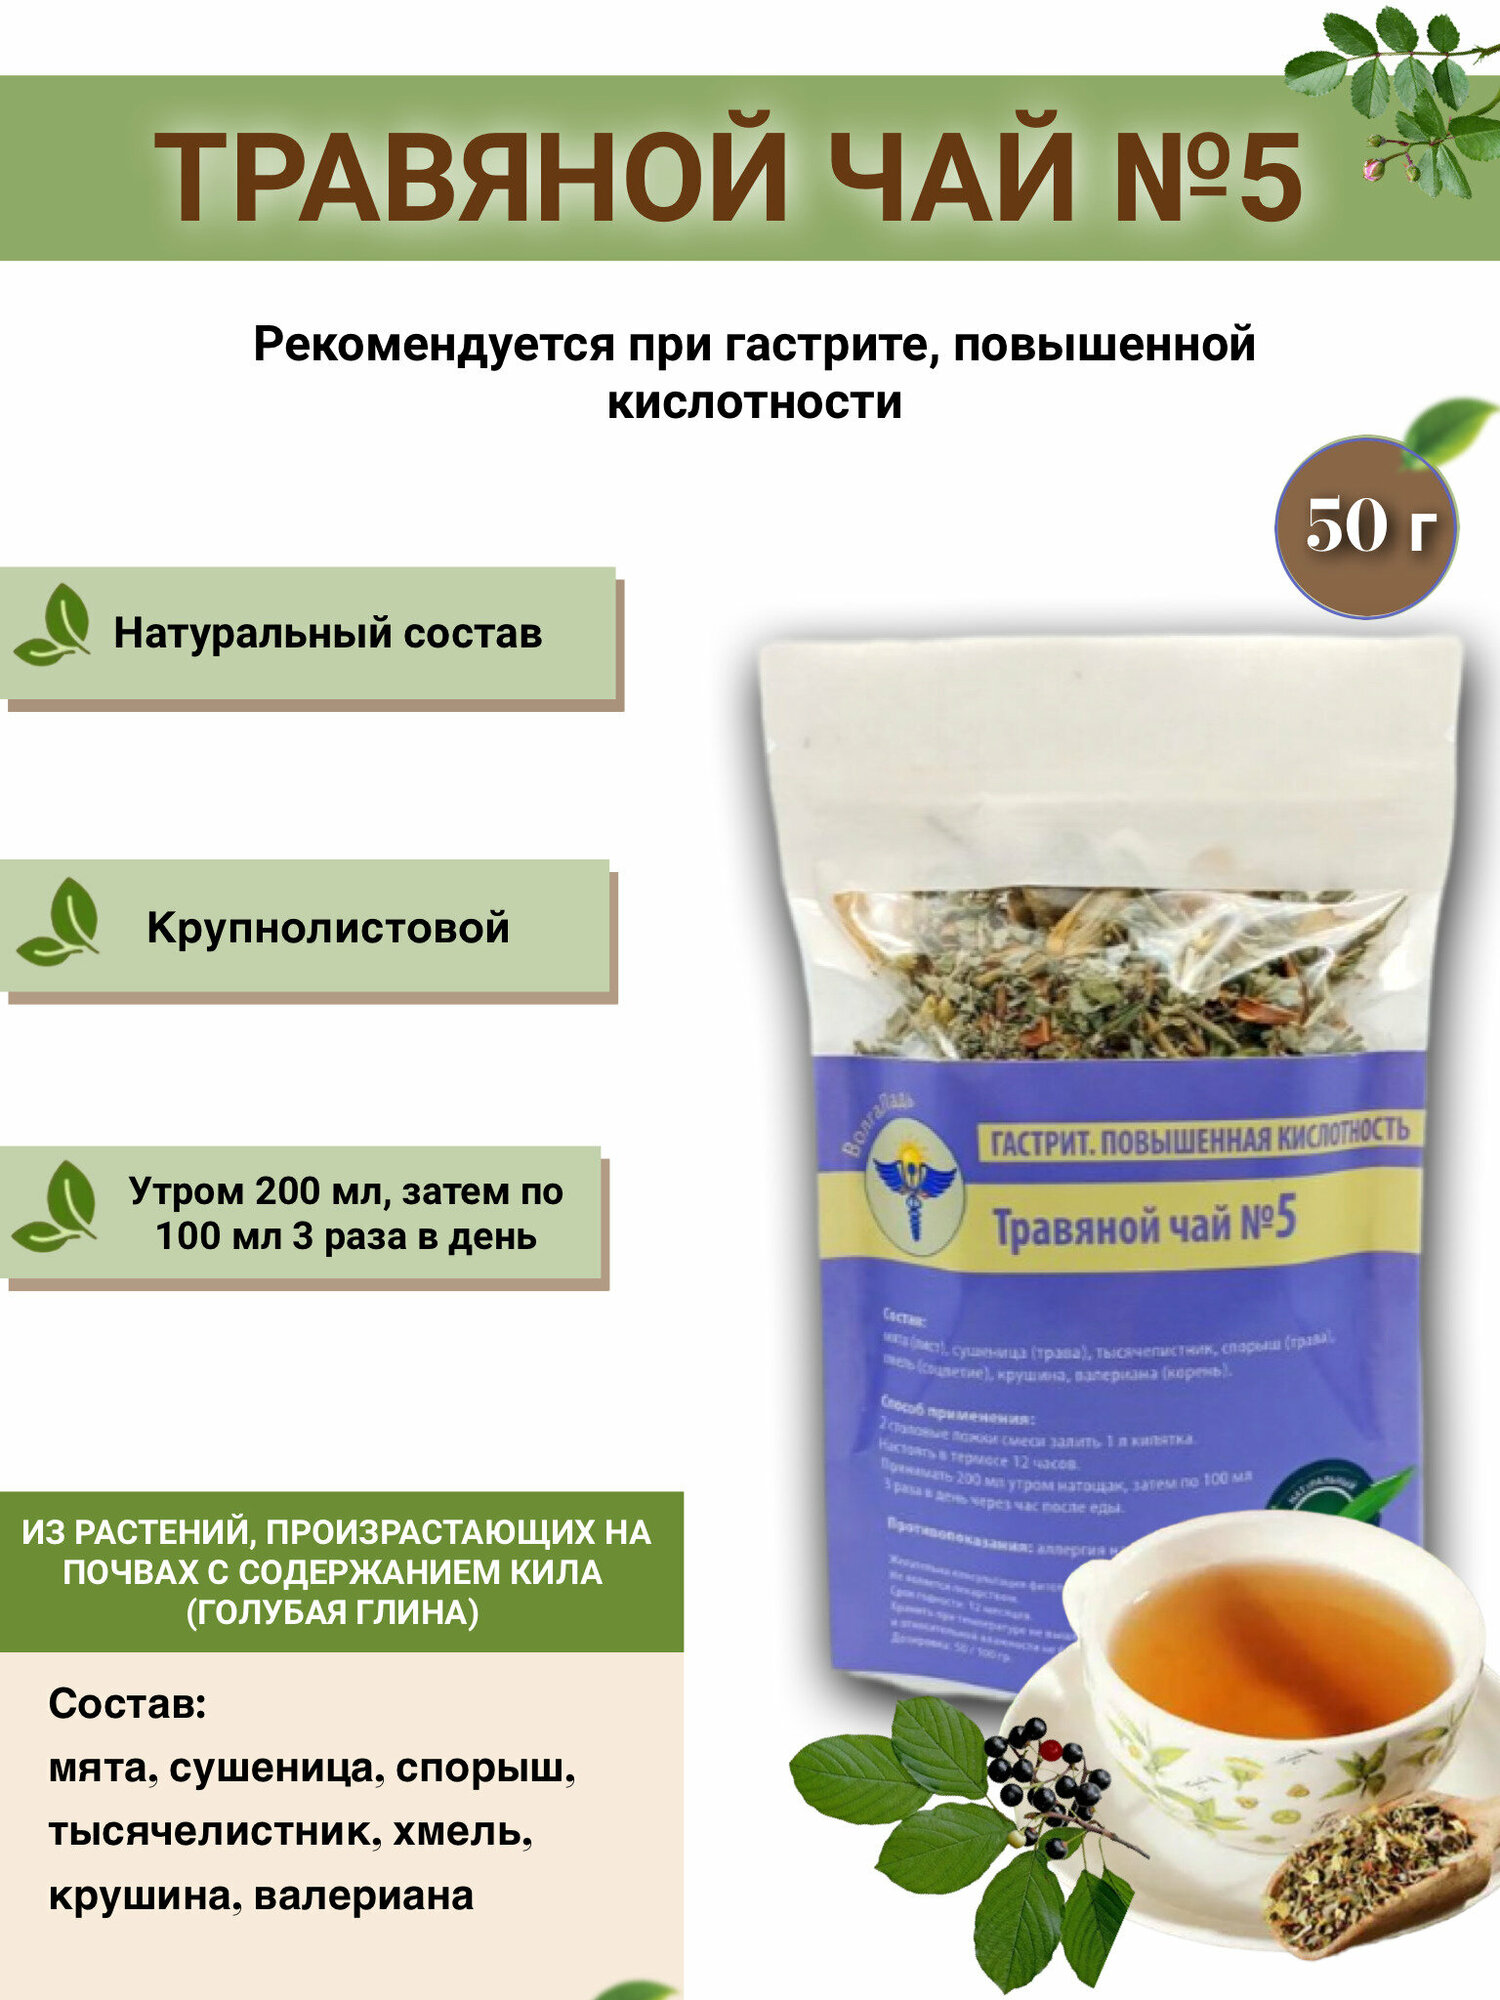 Травяной чай ВолгаЛадь № 5, Гастрит, повышенная кислотность